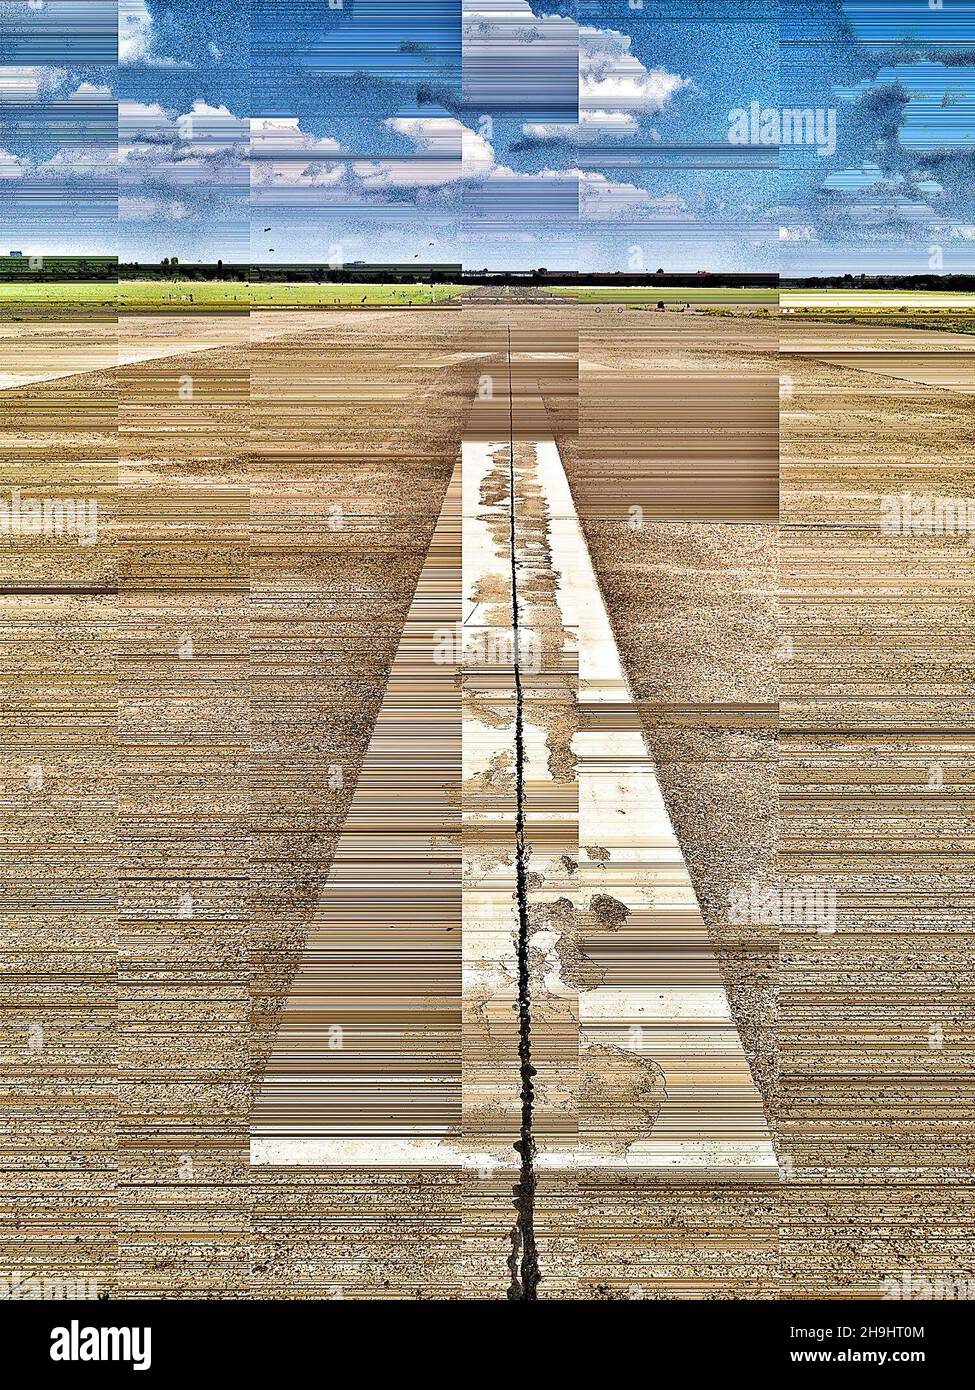 La piste de l'aéroport Templehof de Berlin, une image traitée avec Decim8 (partie d'une série d'images expérimentales prises et traitées sur l'iPhone) Banque D'Images